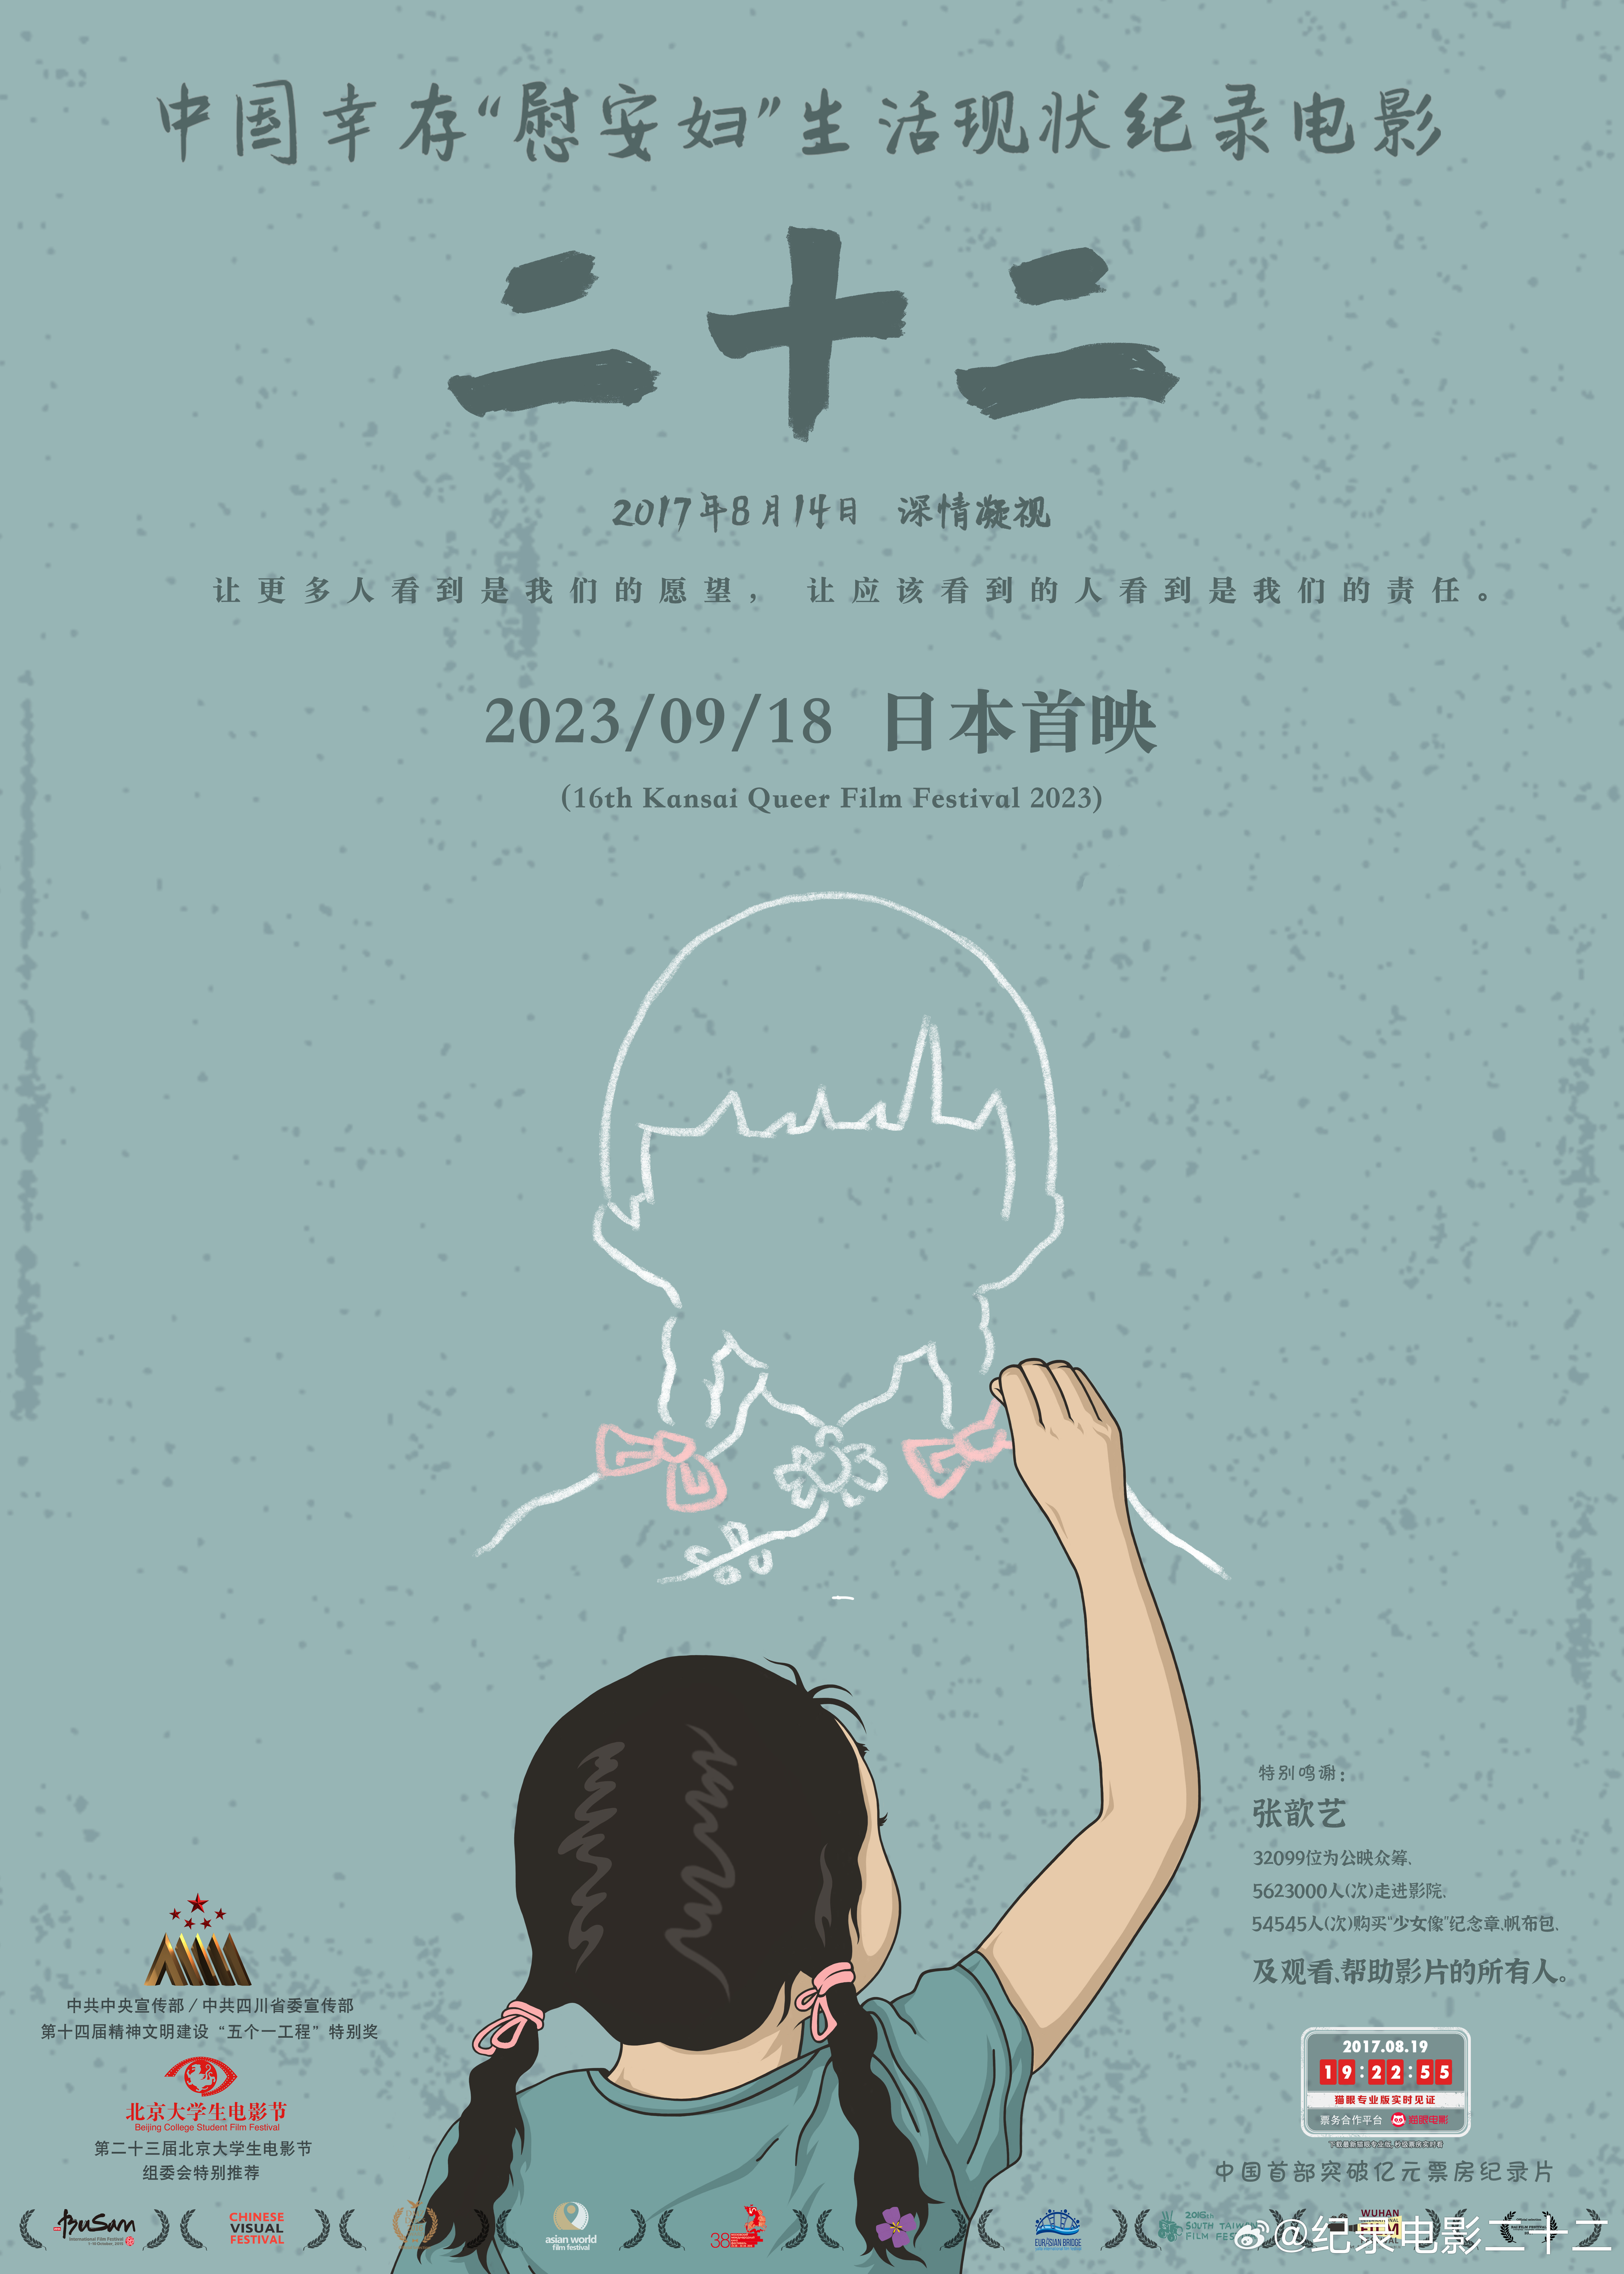 郭柯执导“慰安妇”题材纪录电影《二十二》今日（2023年9月18日）在日本首映